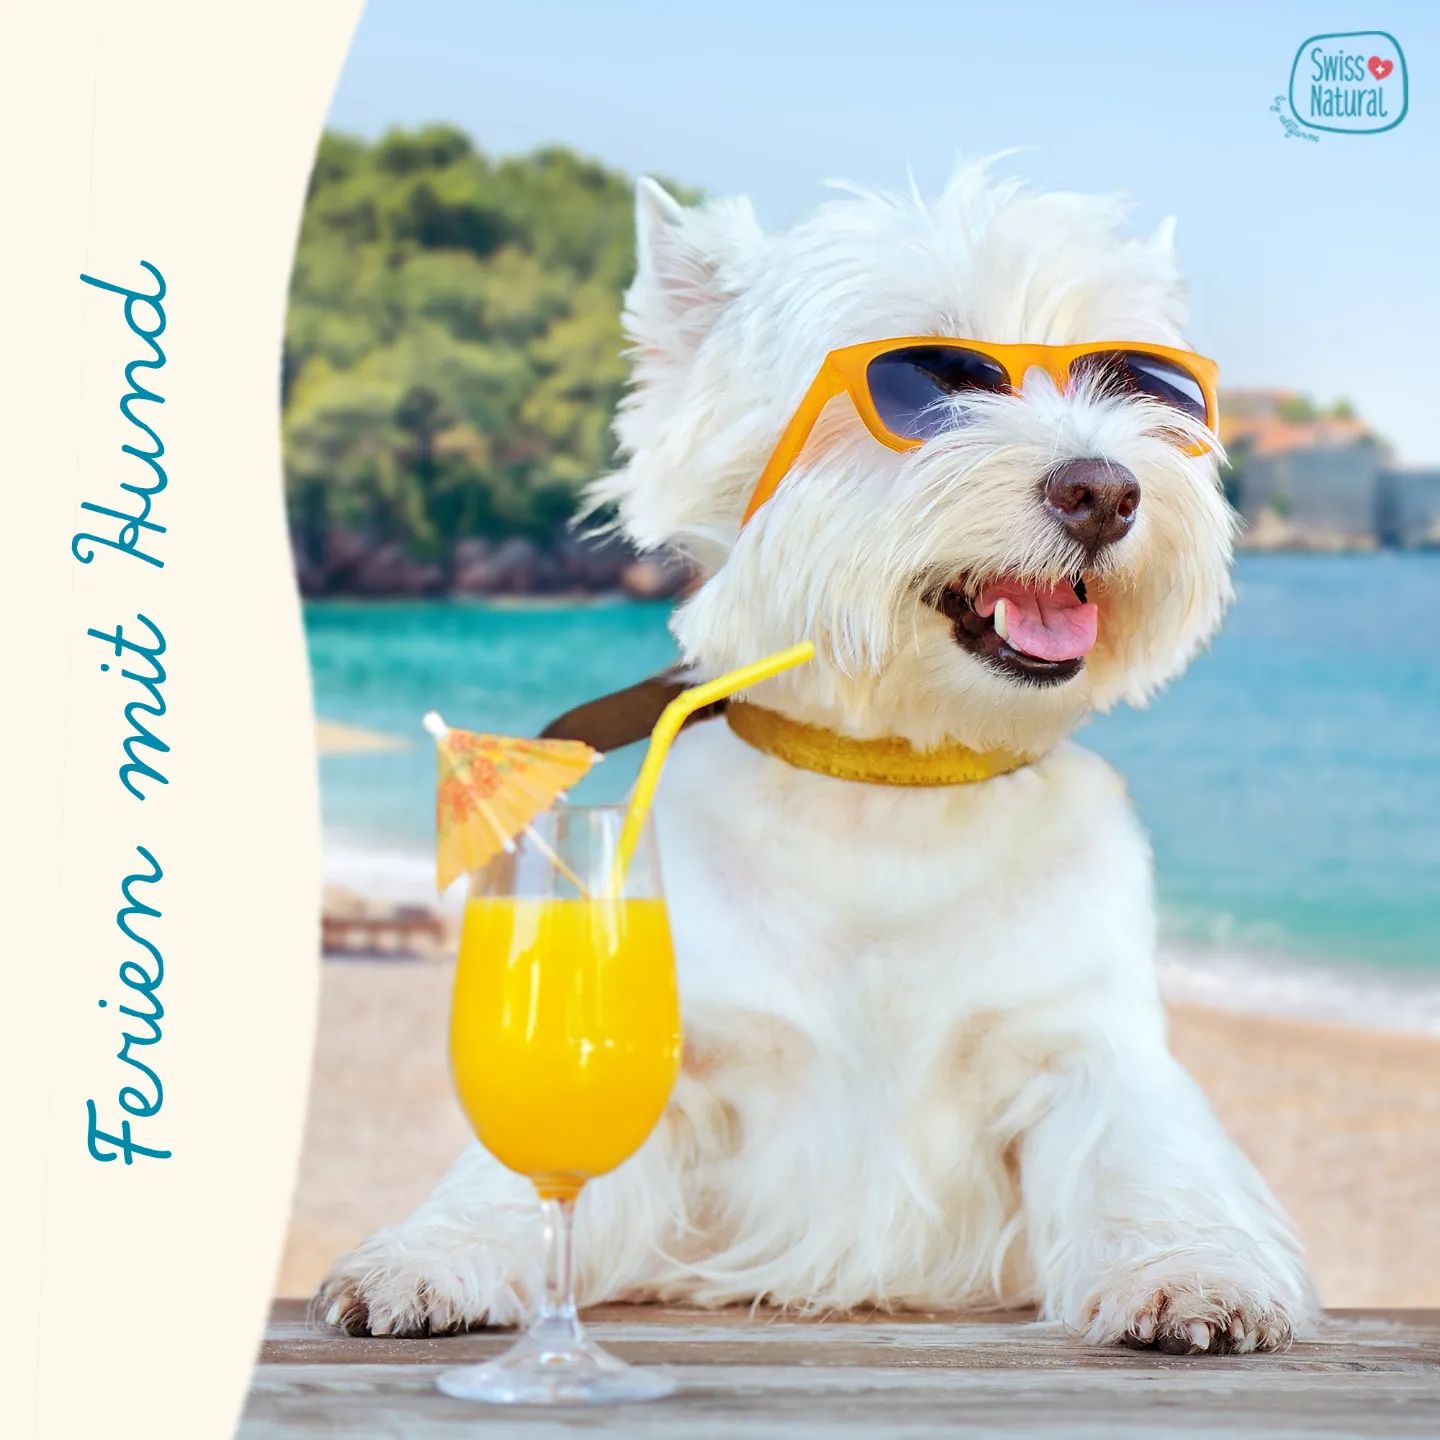 ☀️🏖️ Ferien mit Hund 🏖️☀️

Die Sommerferien stehen bevor - auch wenn das Wetter noch zu wünschen übrig lässt, freuen wir uns doch alle schon darauf 🌞⛅️

Wie verbringt ihr eure Ferien? Dürfen eure Fellnasen euch begleiten? 🏖⛺️🌊

In unserem Blogbeitrag findet ihr ein paar wichtige Inputs zum Thema &quot;Urlaub mit dem Hund&quot; ➡️ Link in der Bio

.
.
.
.
.

#swissnatural #swissnaturalbyallfarm #swissdogfood #swissmade #swiss #swissquality🇨🇭 #schweizerhundefutter #schweizerfleisch #schweizerherkunft #schweizerunternehmen #schweizerqualität #semimoist #softfutter #softeshundefutter #hundefutterausderschweiz #hundefutter #blogbeitrag #sommersonnesonnenschein #ferienmithund #hundeferien #summervibes